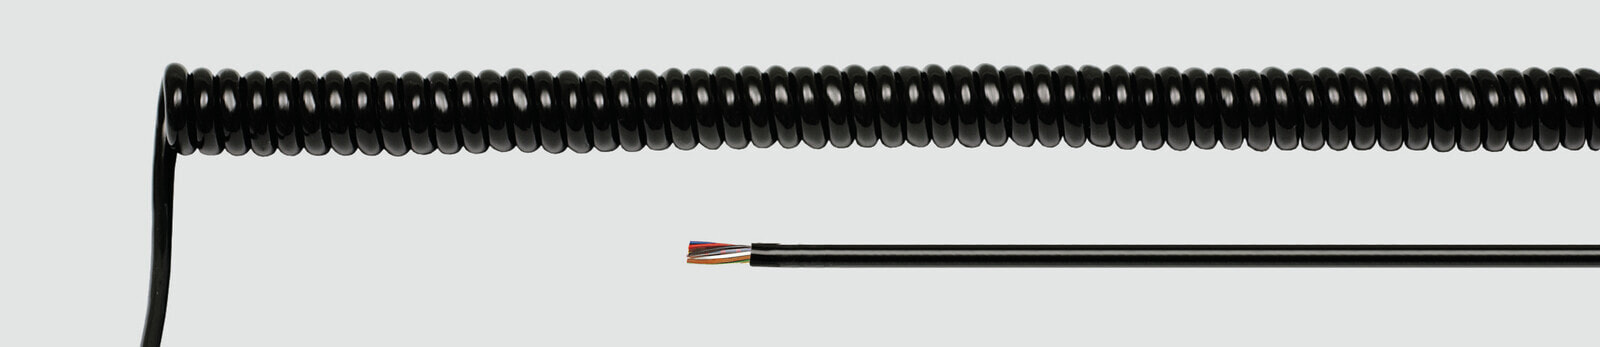 Helukabel 85664 - Low voltage cable - Black - Cooper - 0.25 mm² - 64.8 kg/km - -25 - 70 °C